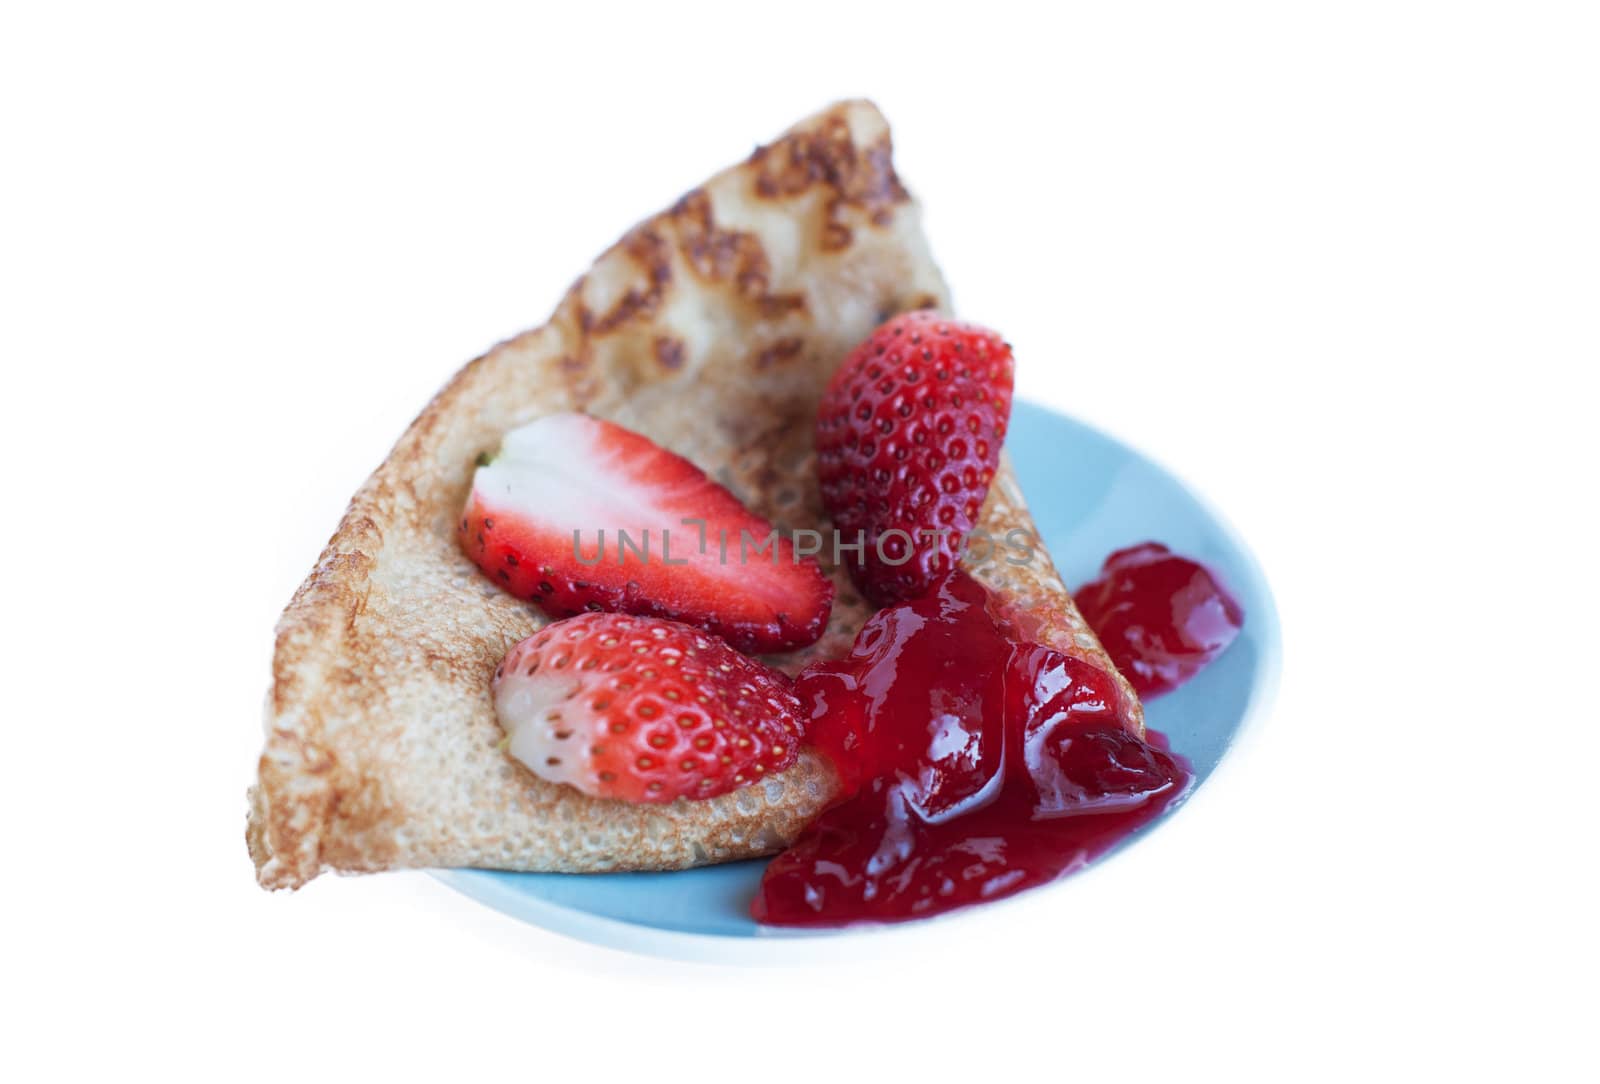 Pancake with strawberries and jam by raduga21